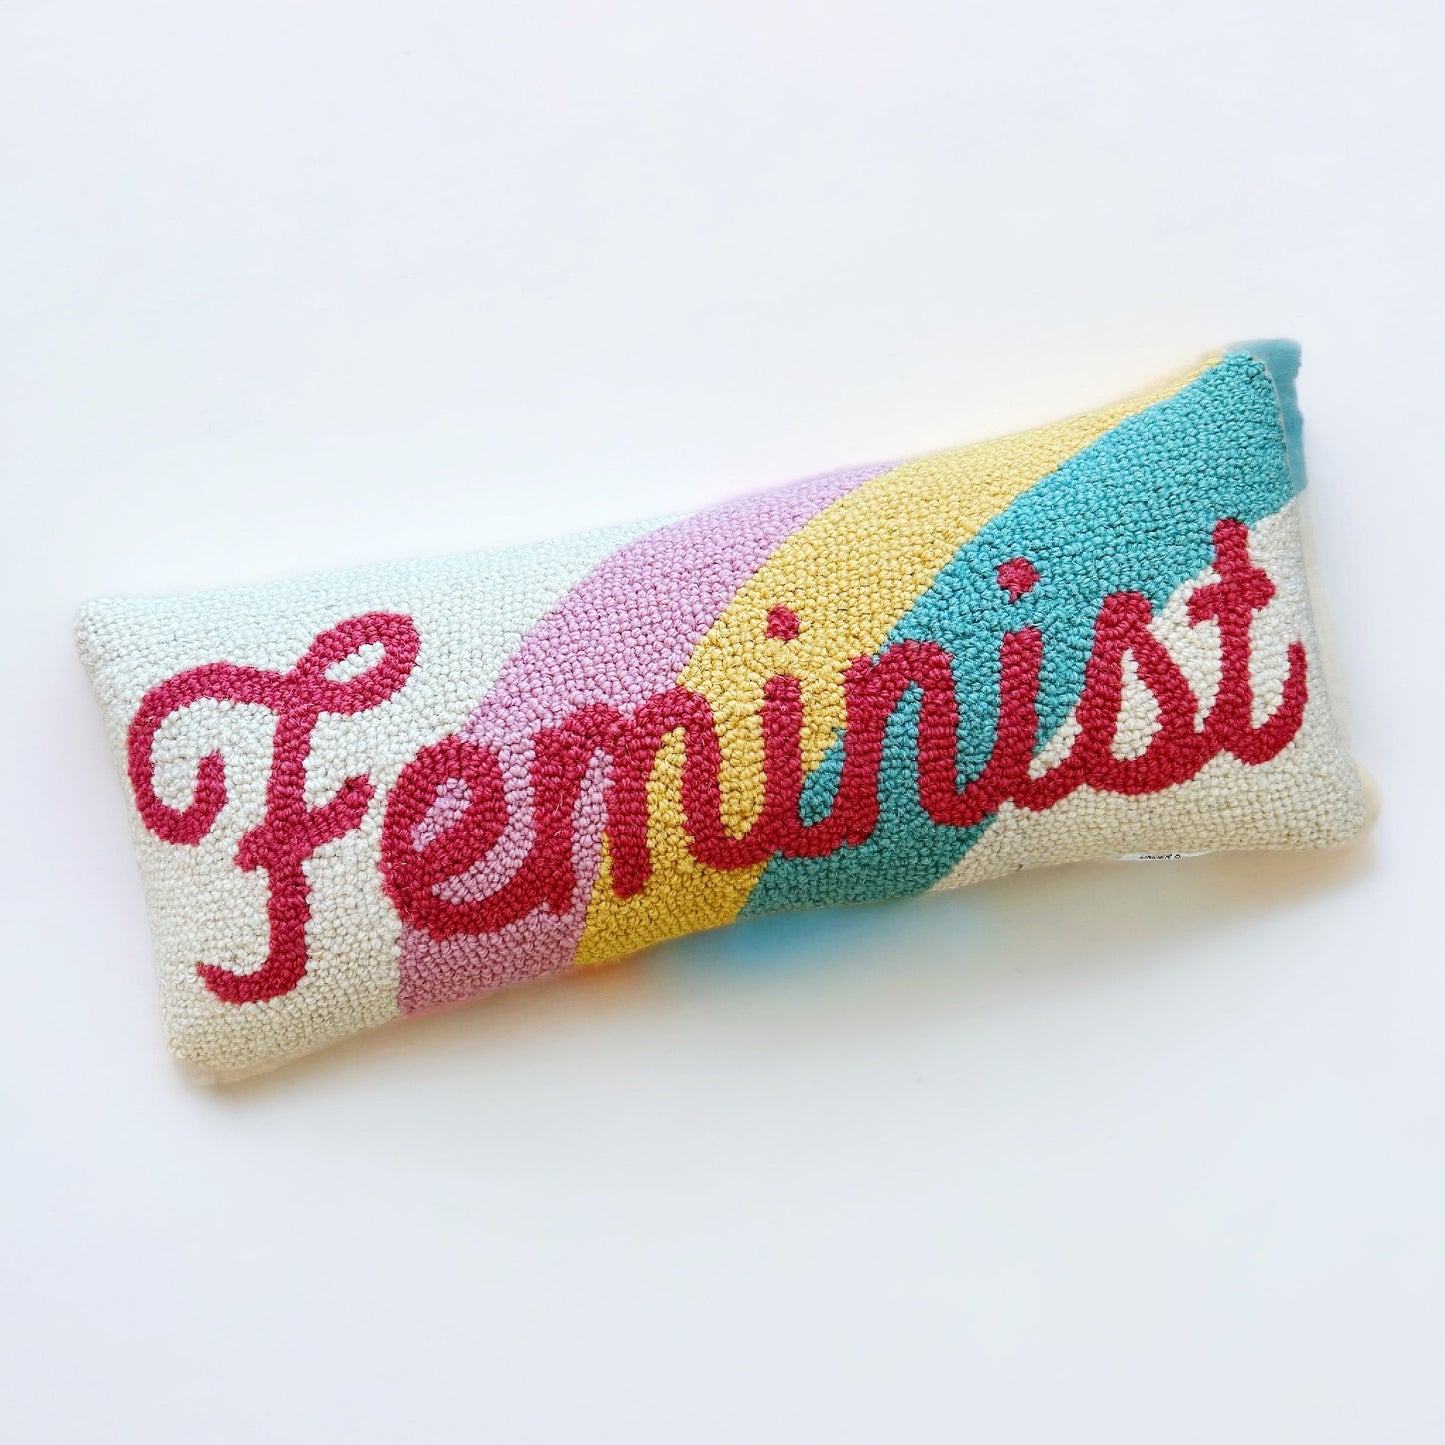 Feminist Pillow